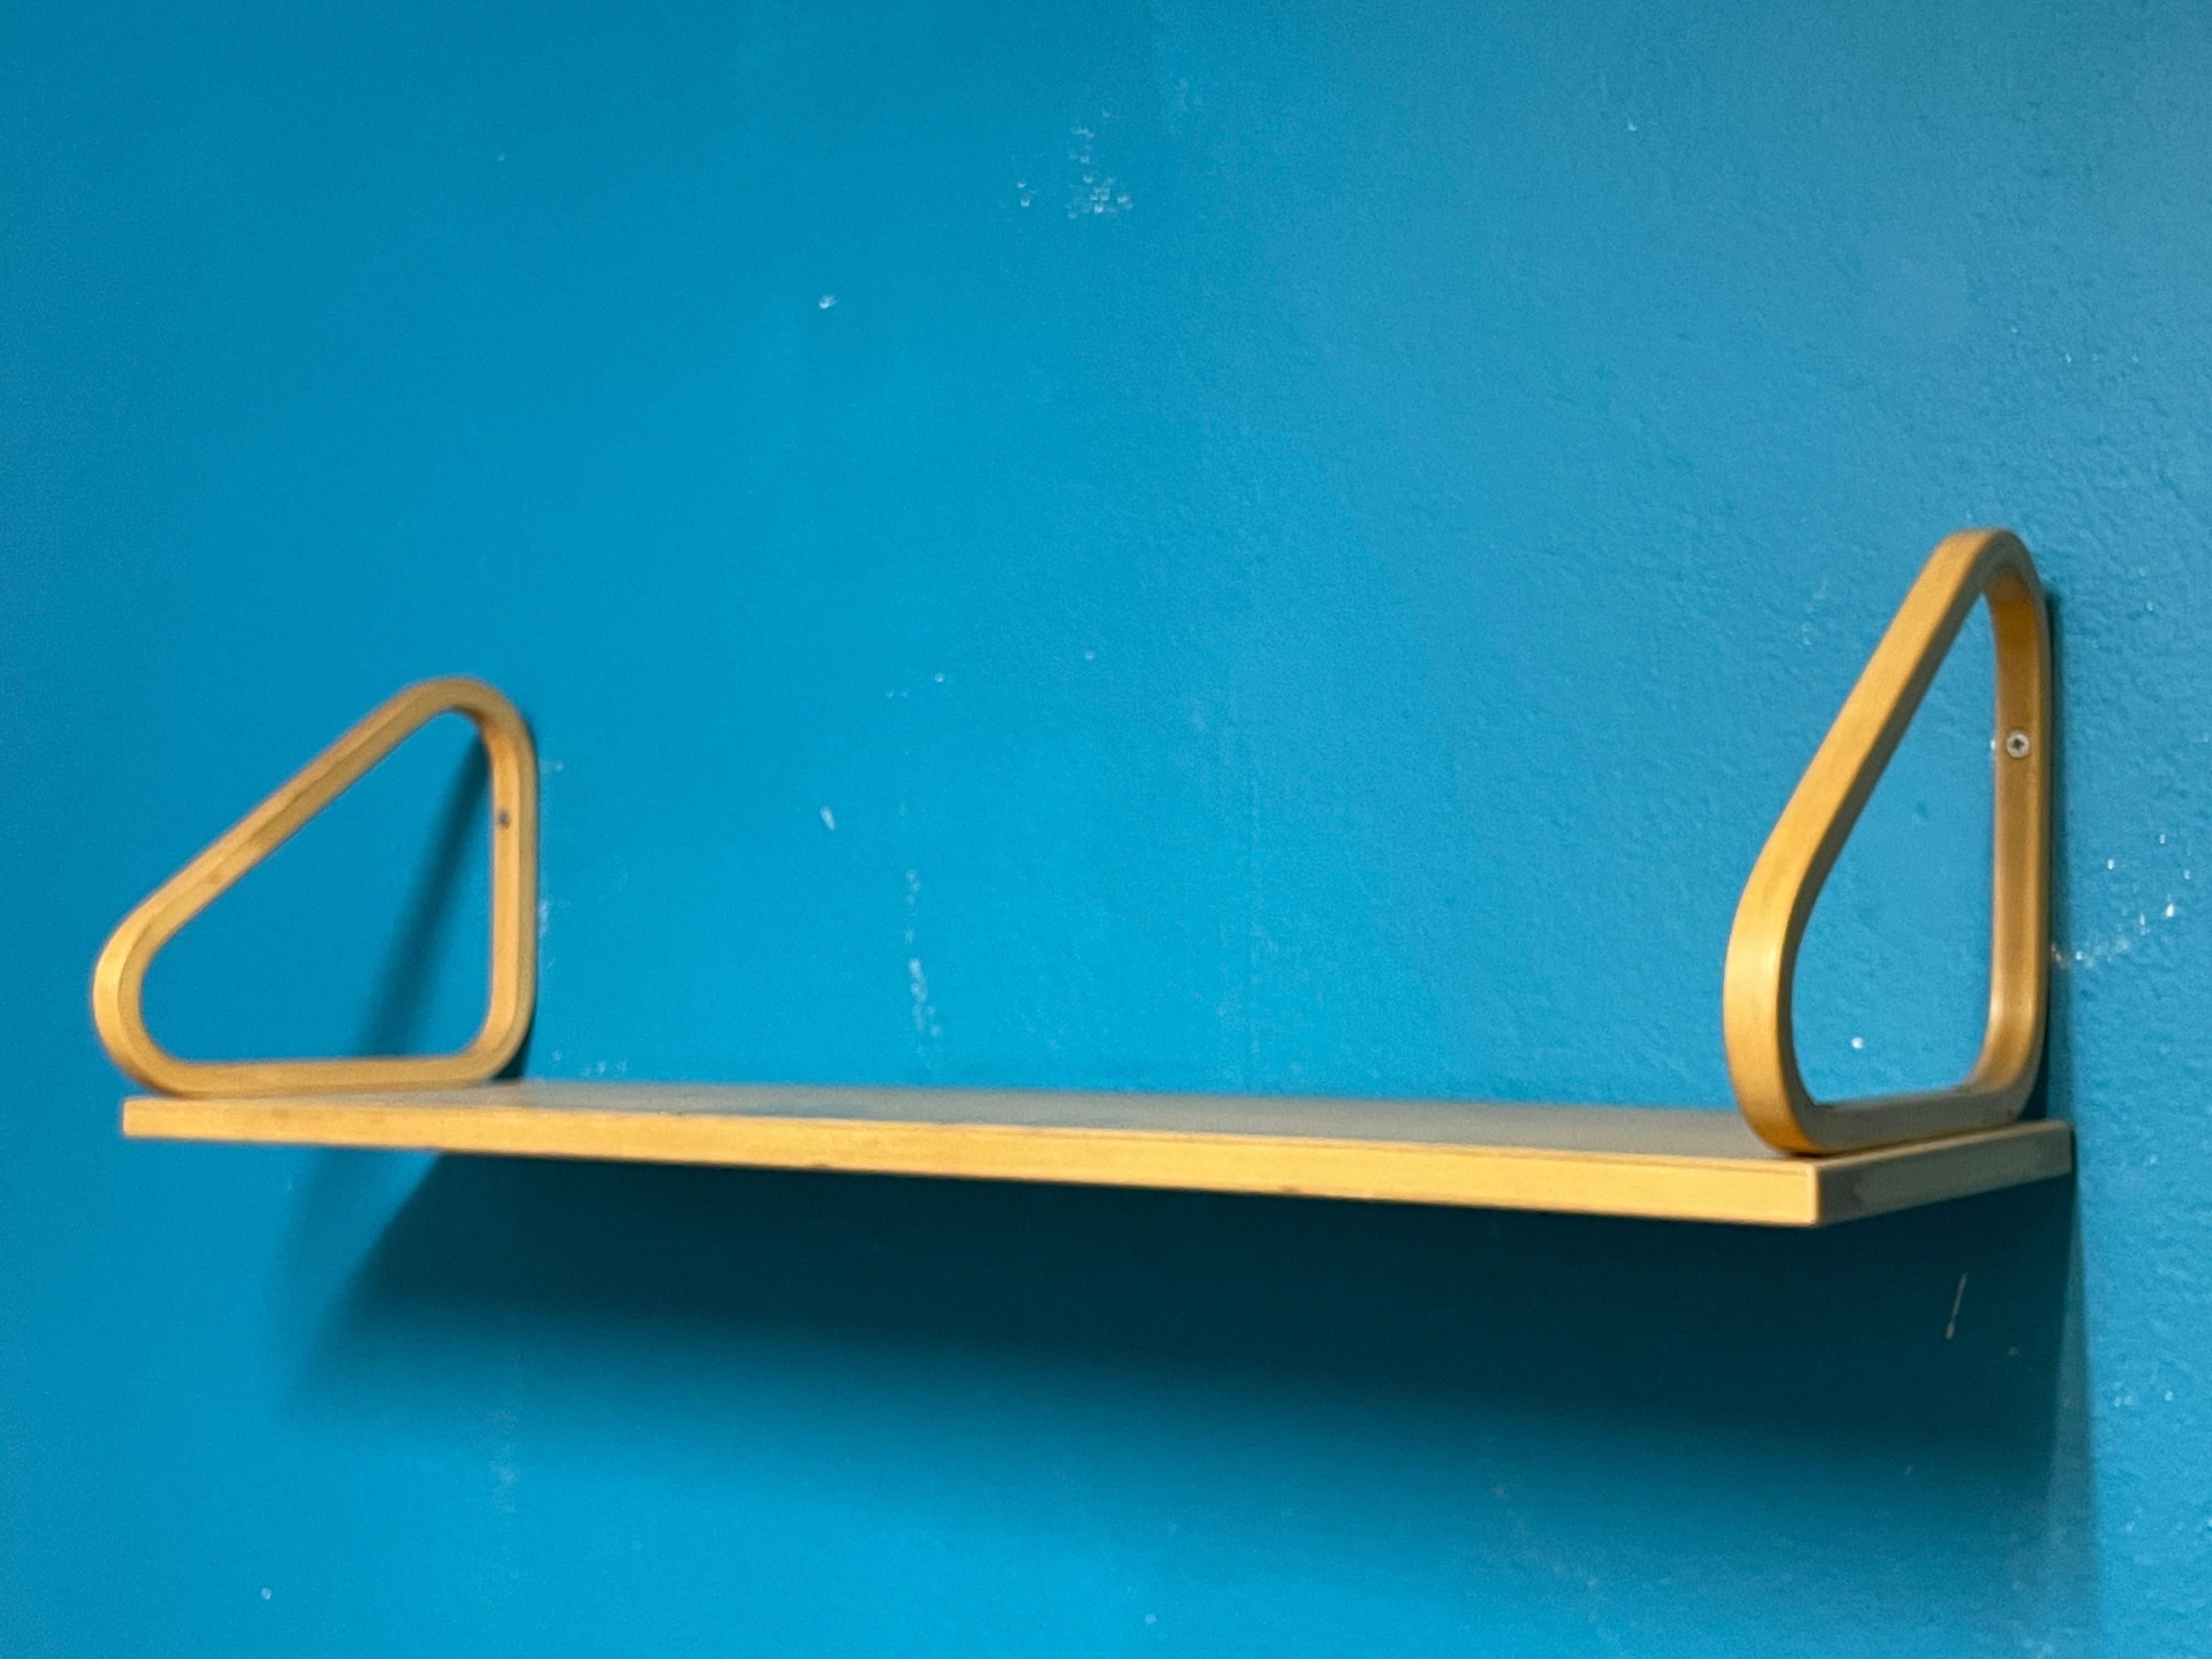 Das Wandregal 112B von Artek ist ein elegantes und praktisches Regal, das für Bücher, dekorative Lampen oder kleine Gegenstände verwendet werden kann. Alvar Aalto entwarf das Wandregal 112 im Jahr 1936.

Dieses Exemplar wurde in den 1960er Jahren